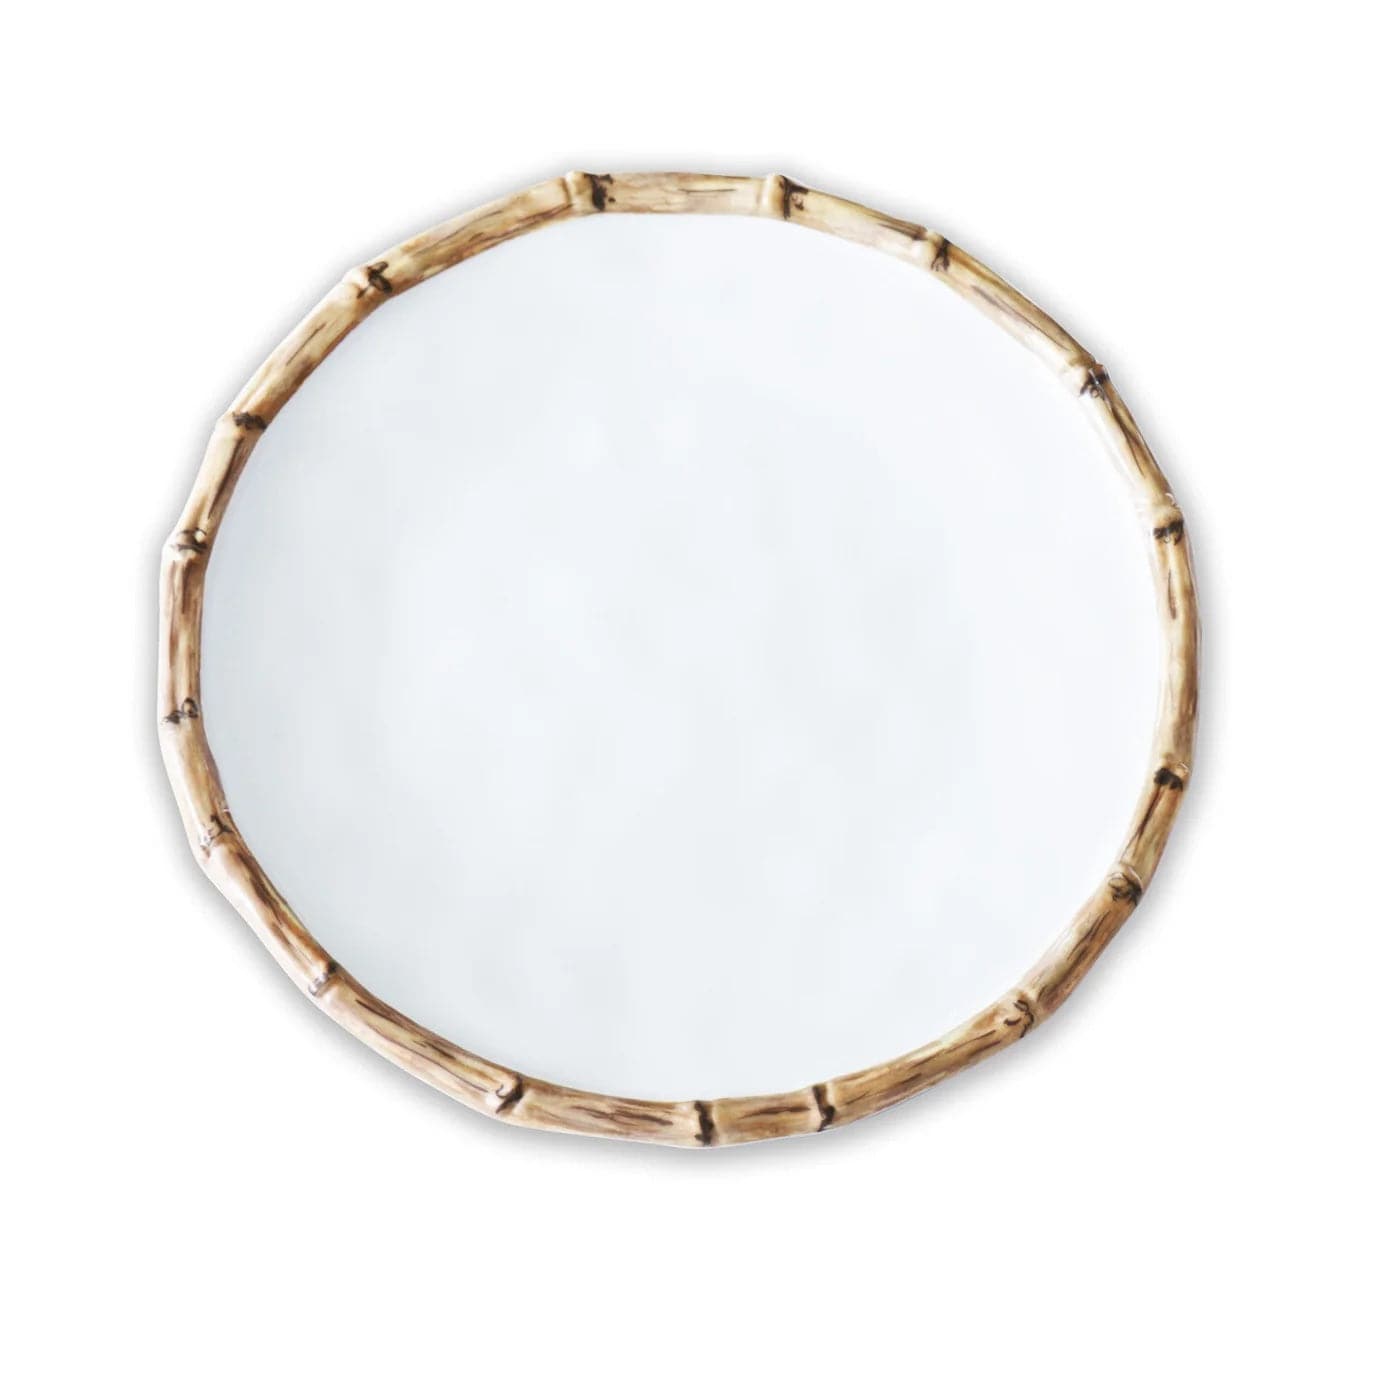 Beatriz Ball - VIDA Bamboo 9" Salad Plate (White and Natural) - Findlay Rowe Designs